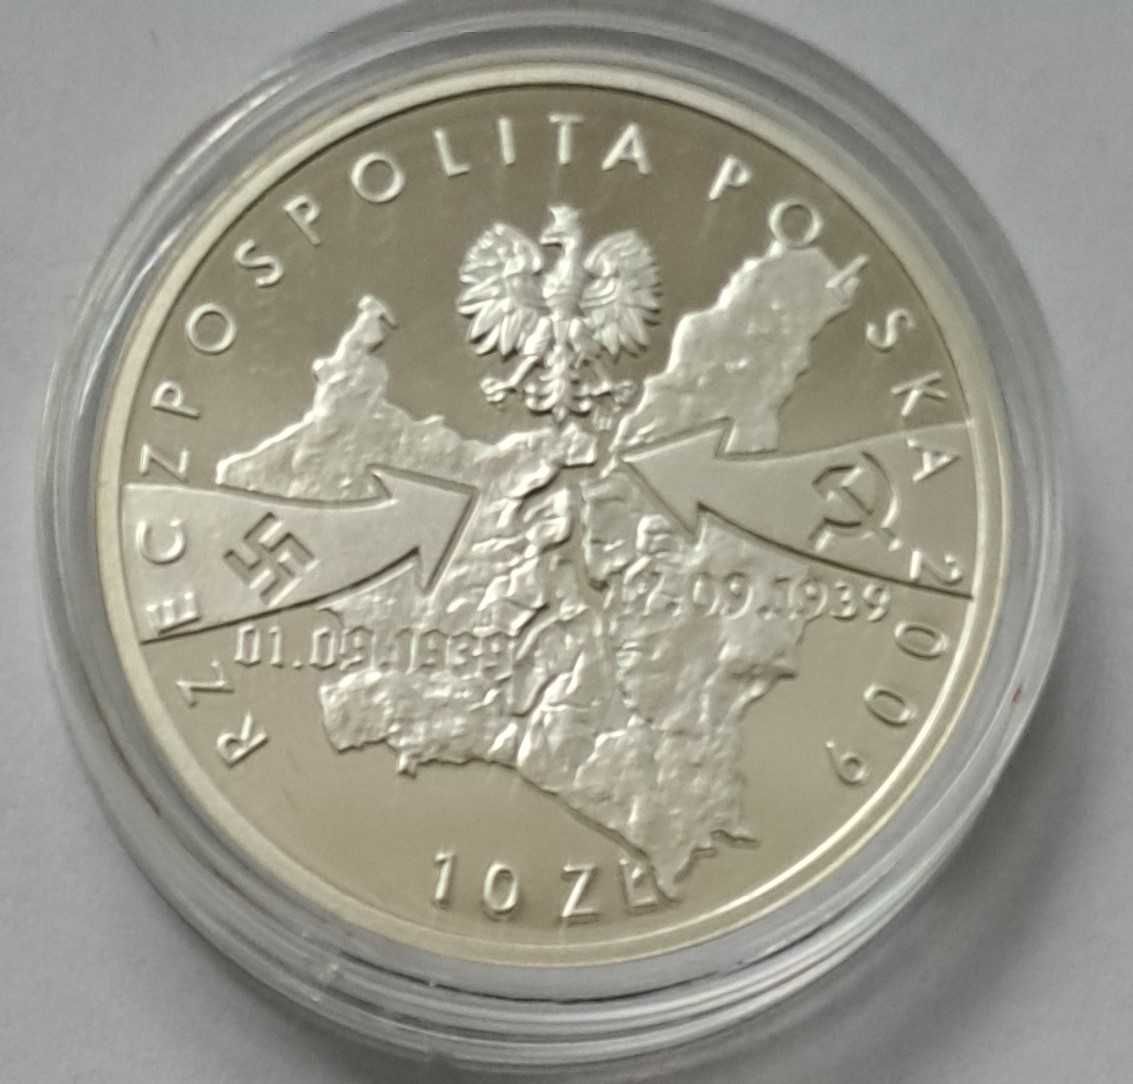 10 zł 2009 - Wrzesień 1939